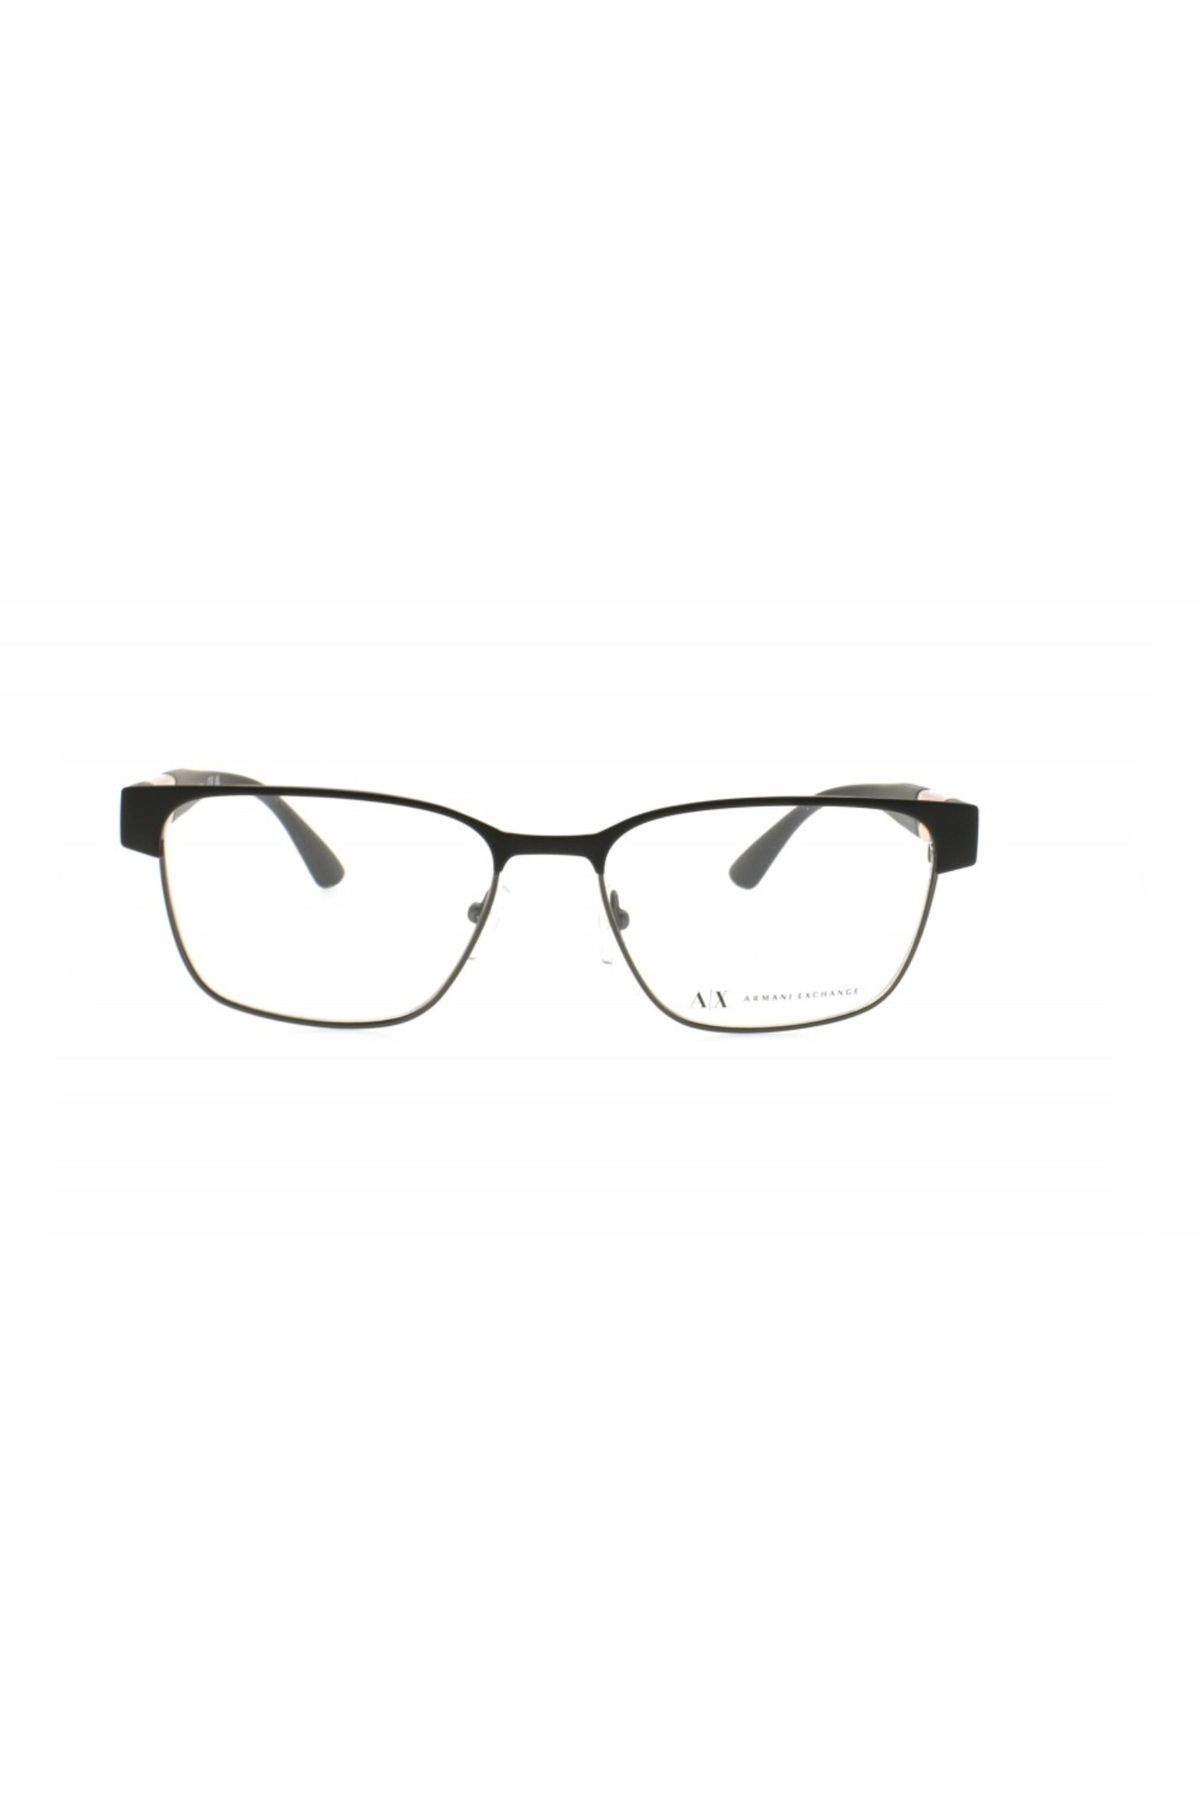 Armani Exchange AX1052 6005 55 mavi ışık korumalı gözlük